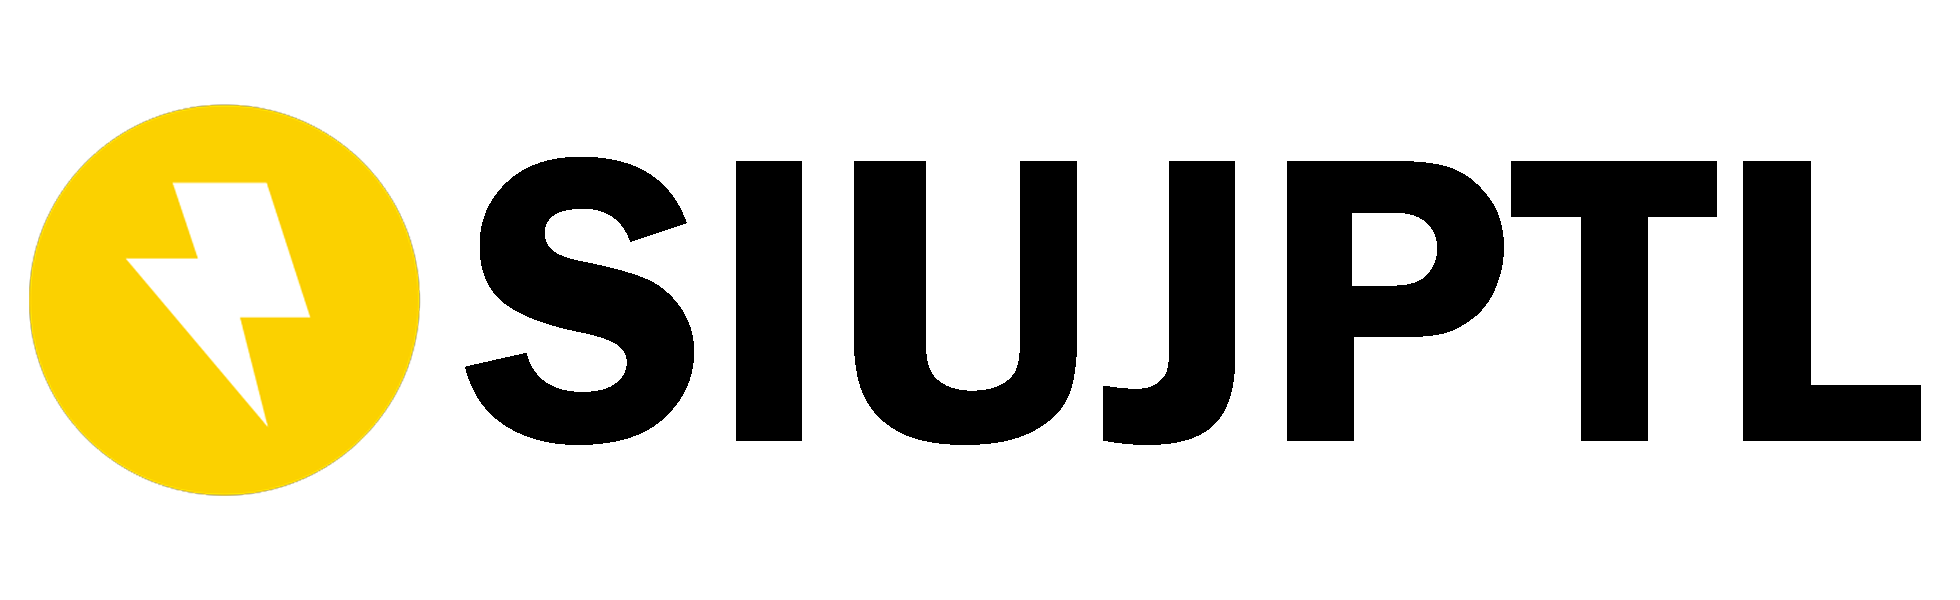 Logo IndoTender.com - Penanggung Jawab Badan Usaha PJBU